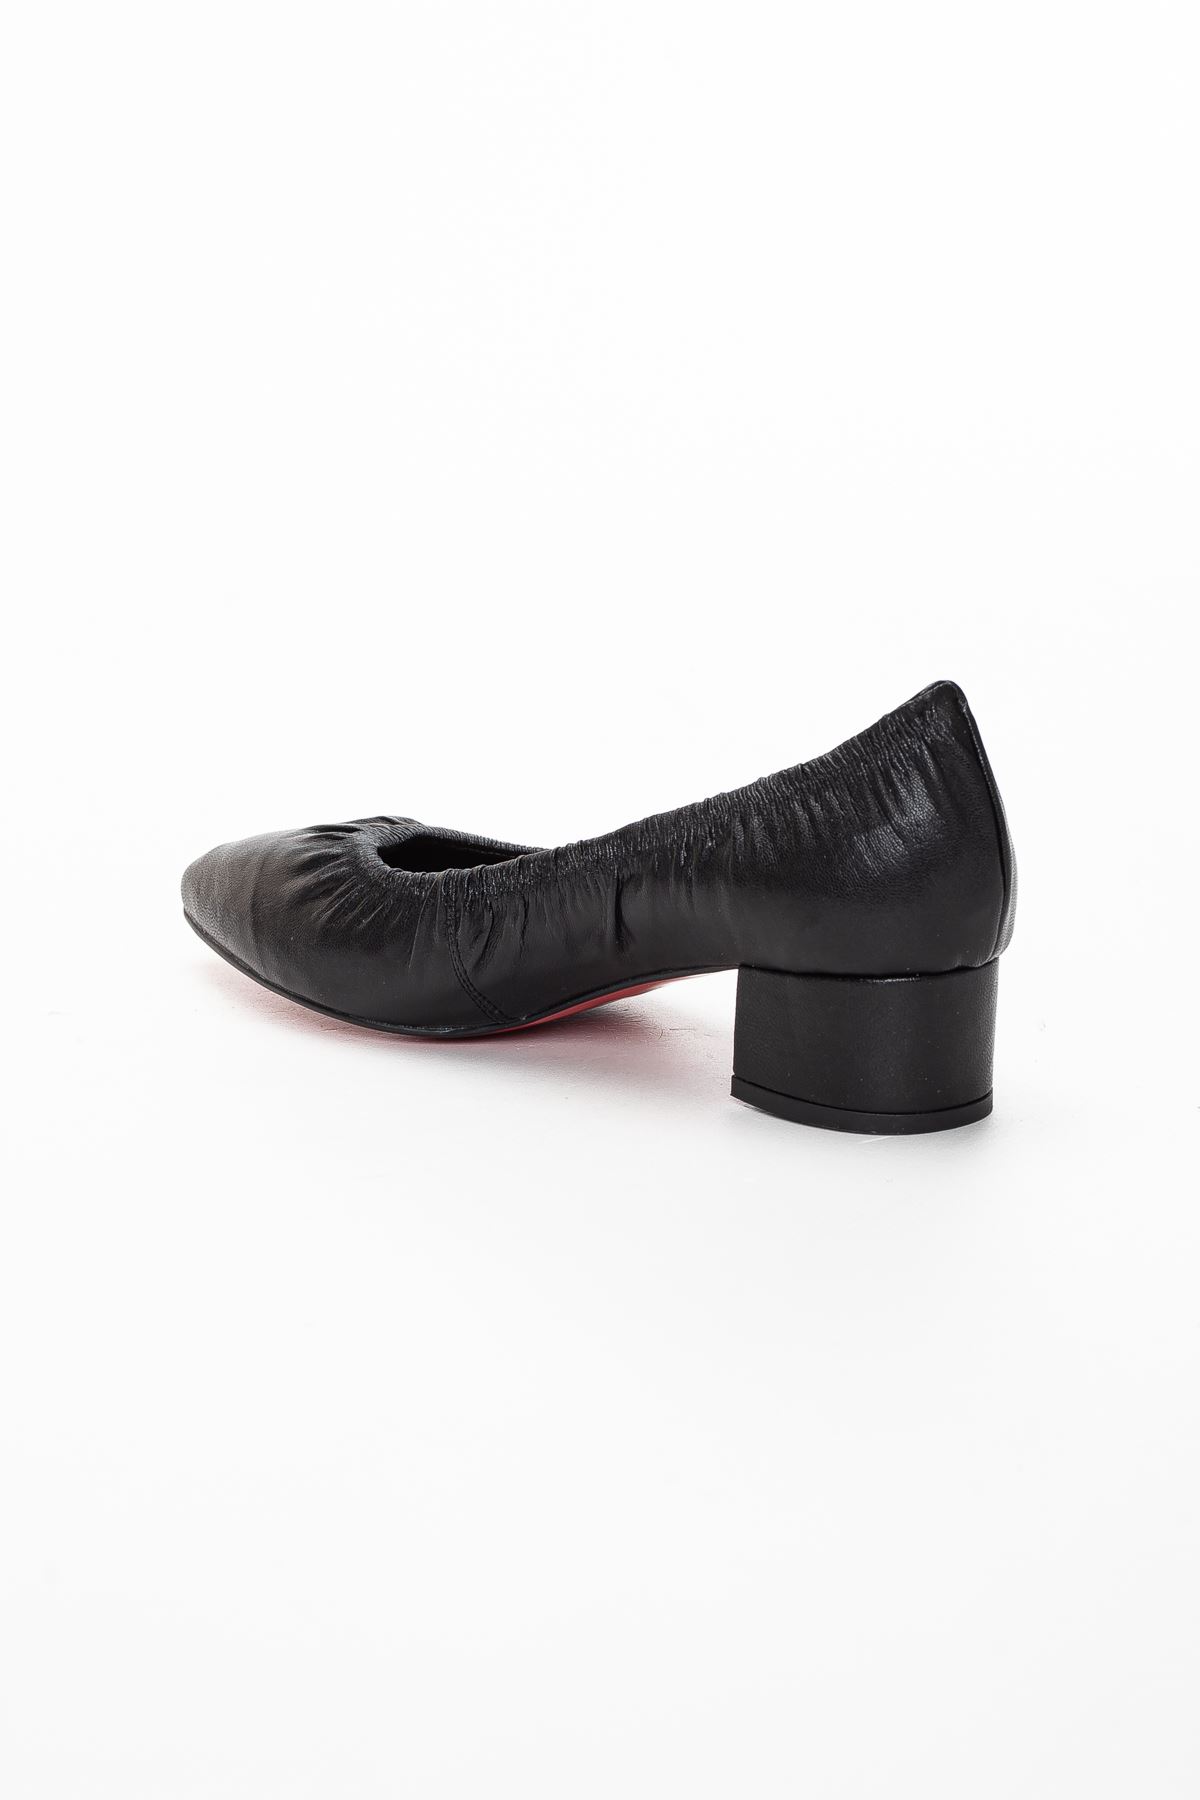 Limsi Kadın Topuklu Ayakkabı SİYAH CİLT